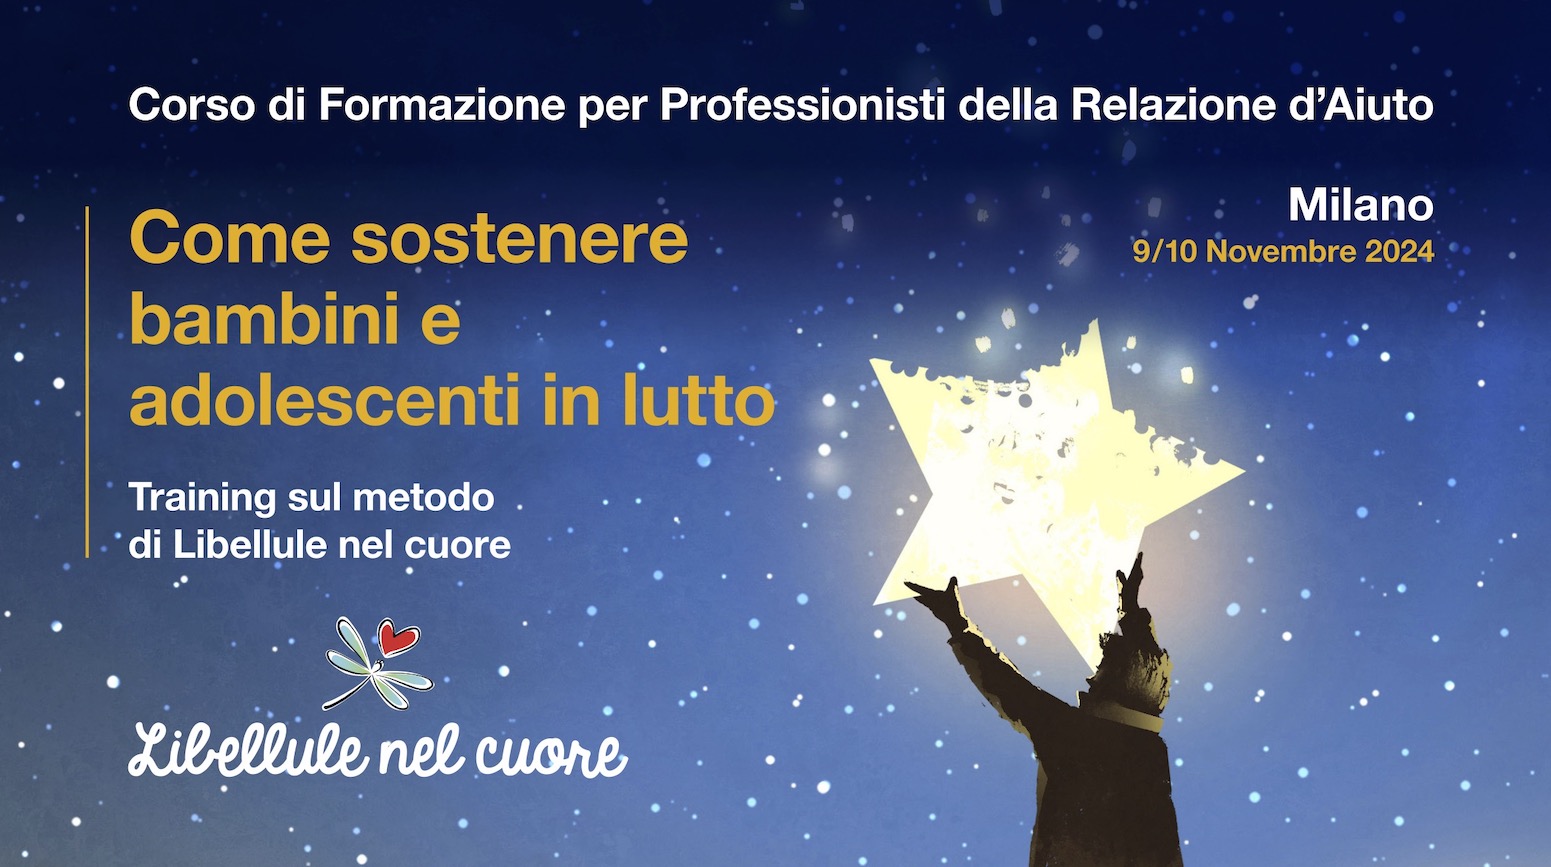 Evento "Come sostenere bambini e adolescenti in lutto" - 9/10 Novembre 2024 - Milano